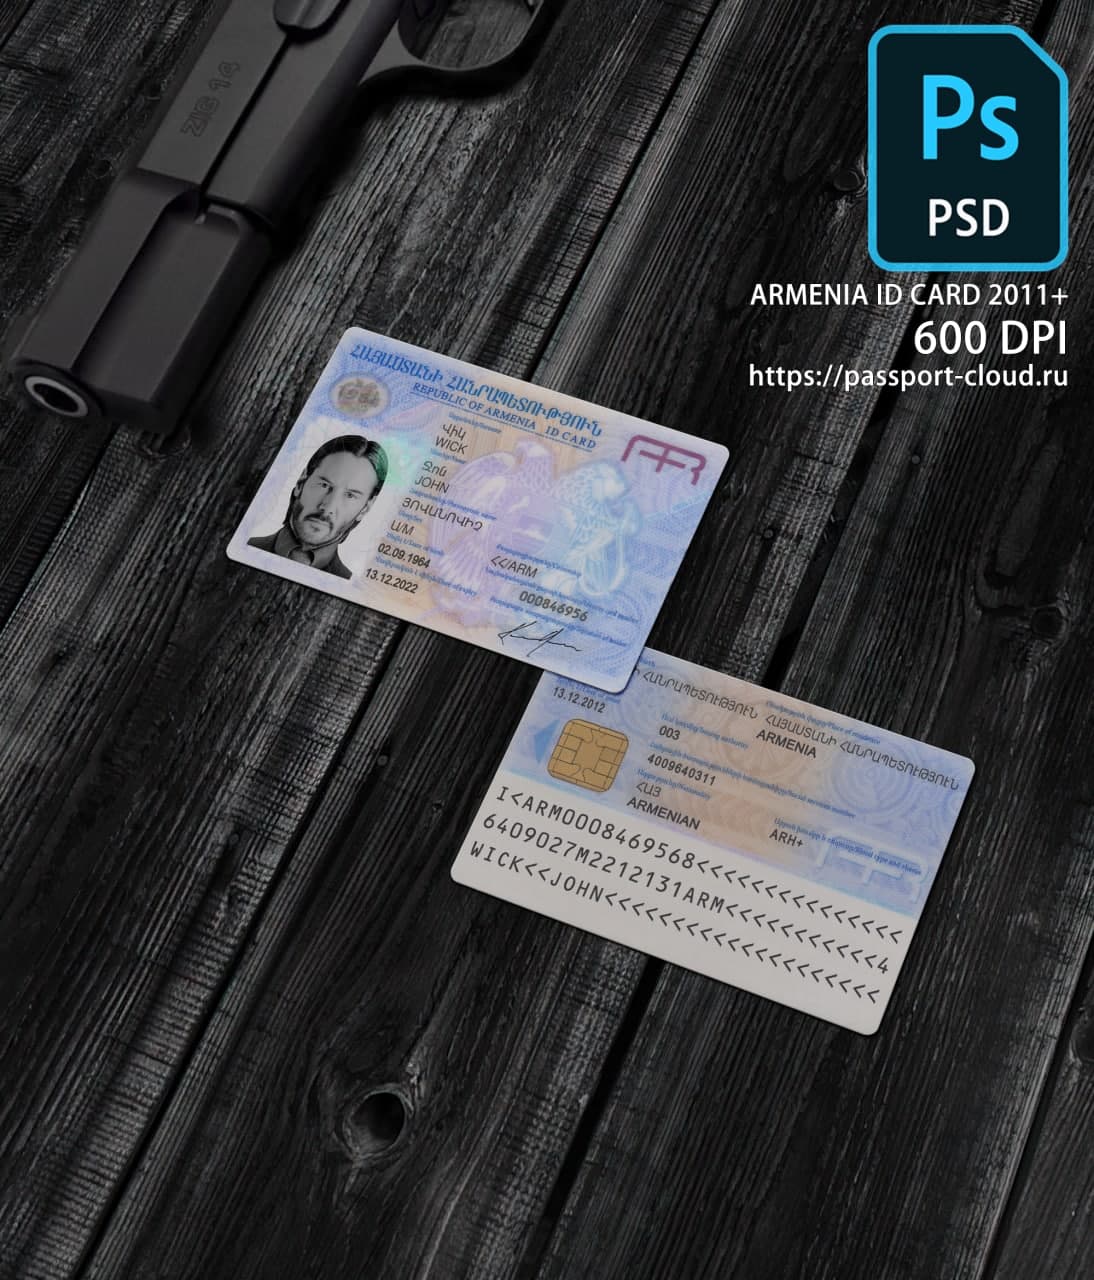 Armenia ID Card 2011+ PSD1